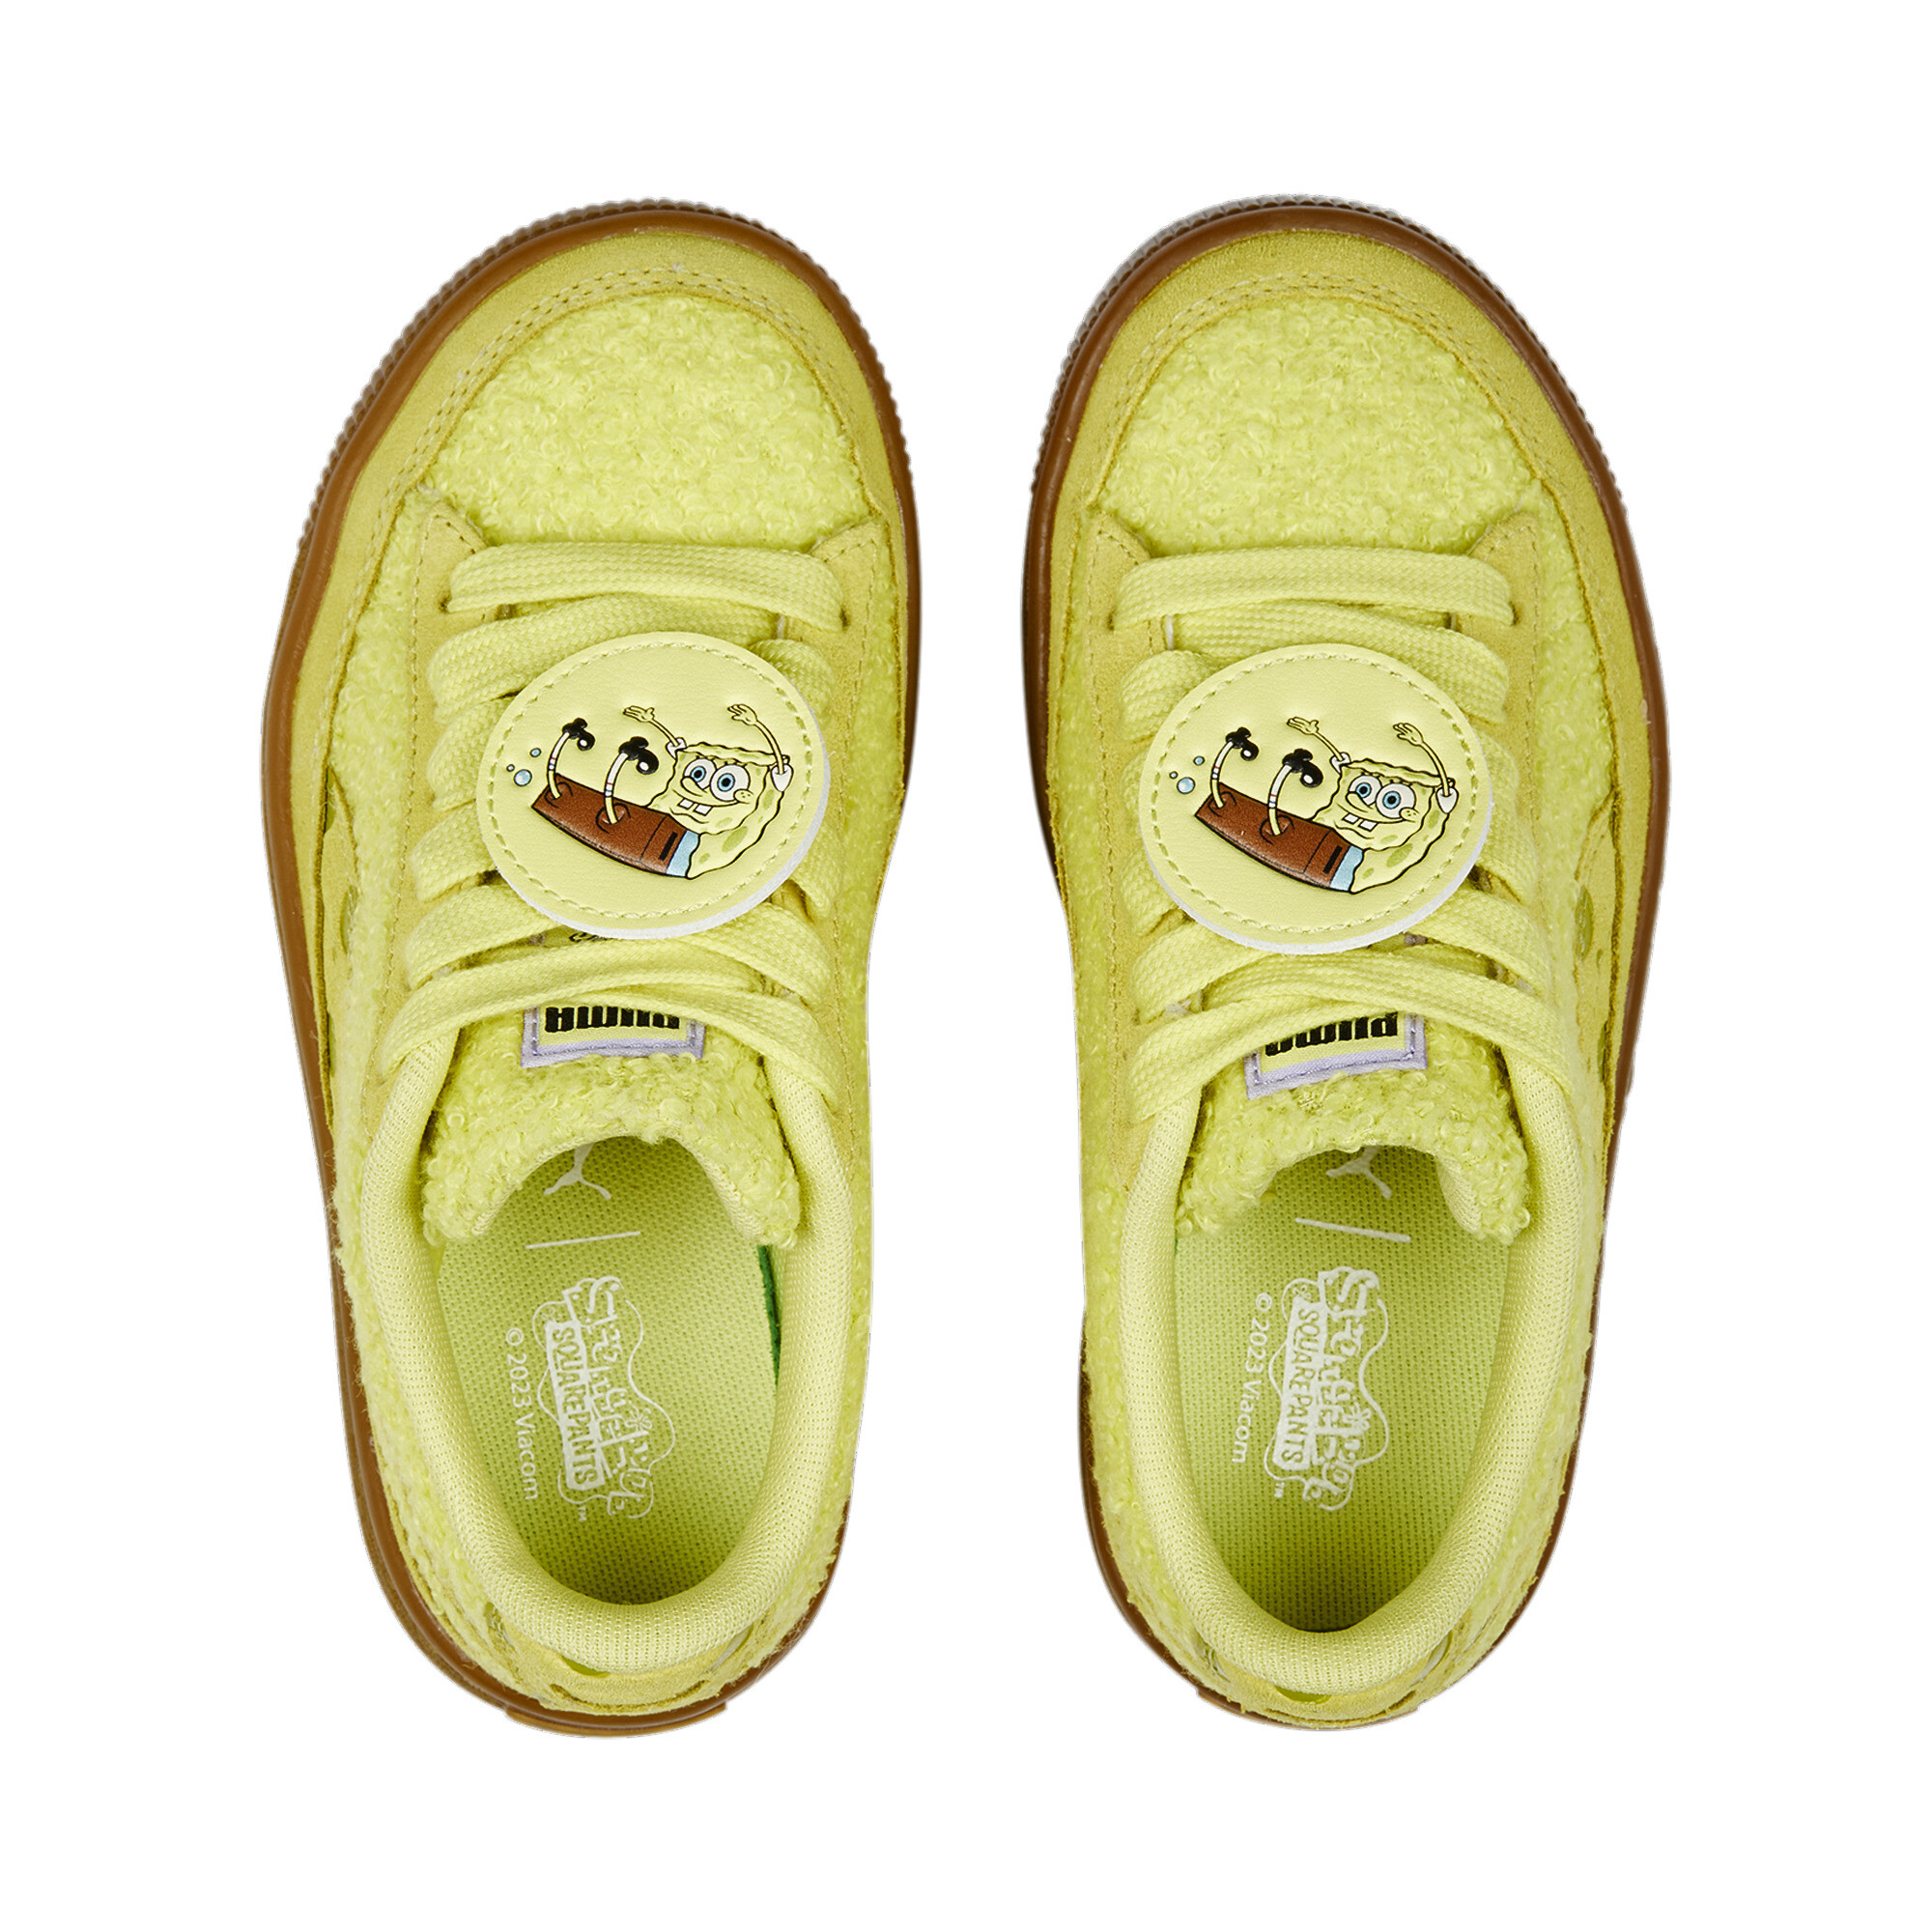 حذاء رياضي للأطفال PUMA X SPONGEBOB Suede أصفر